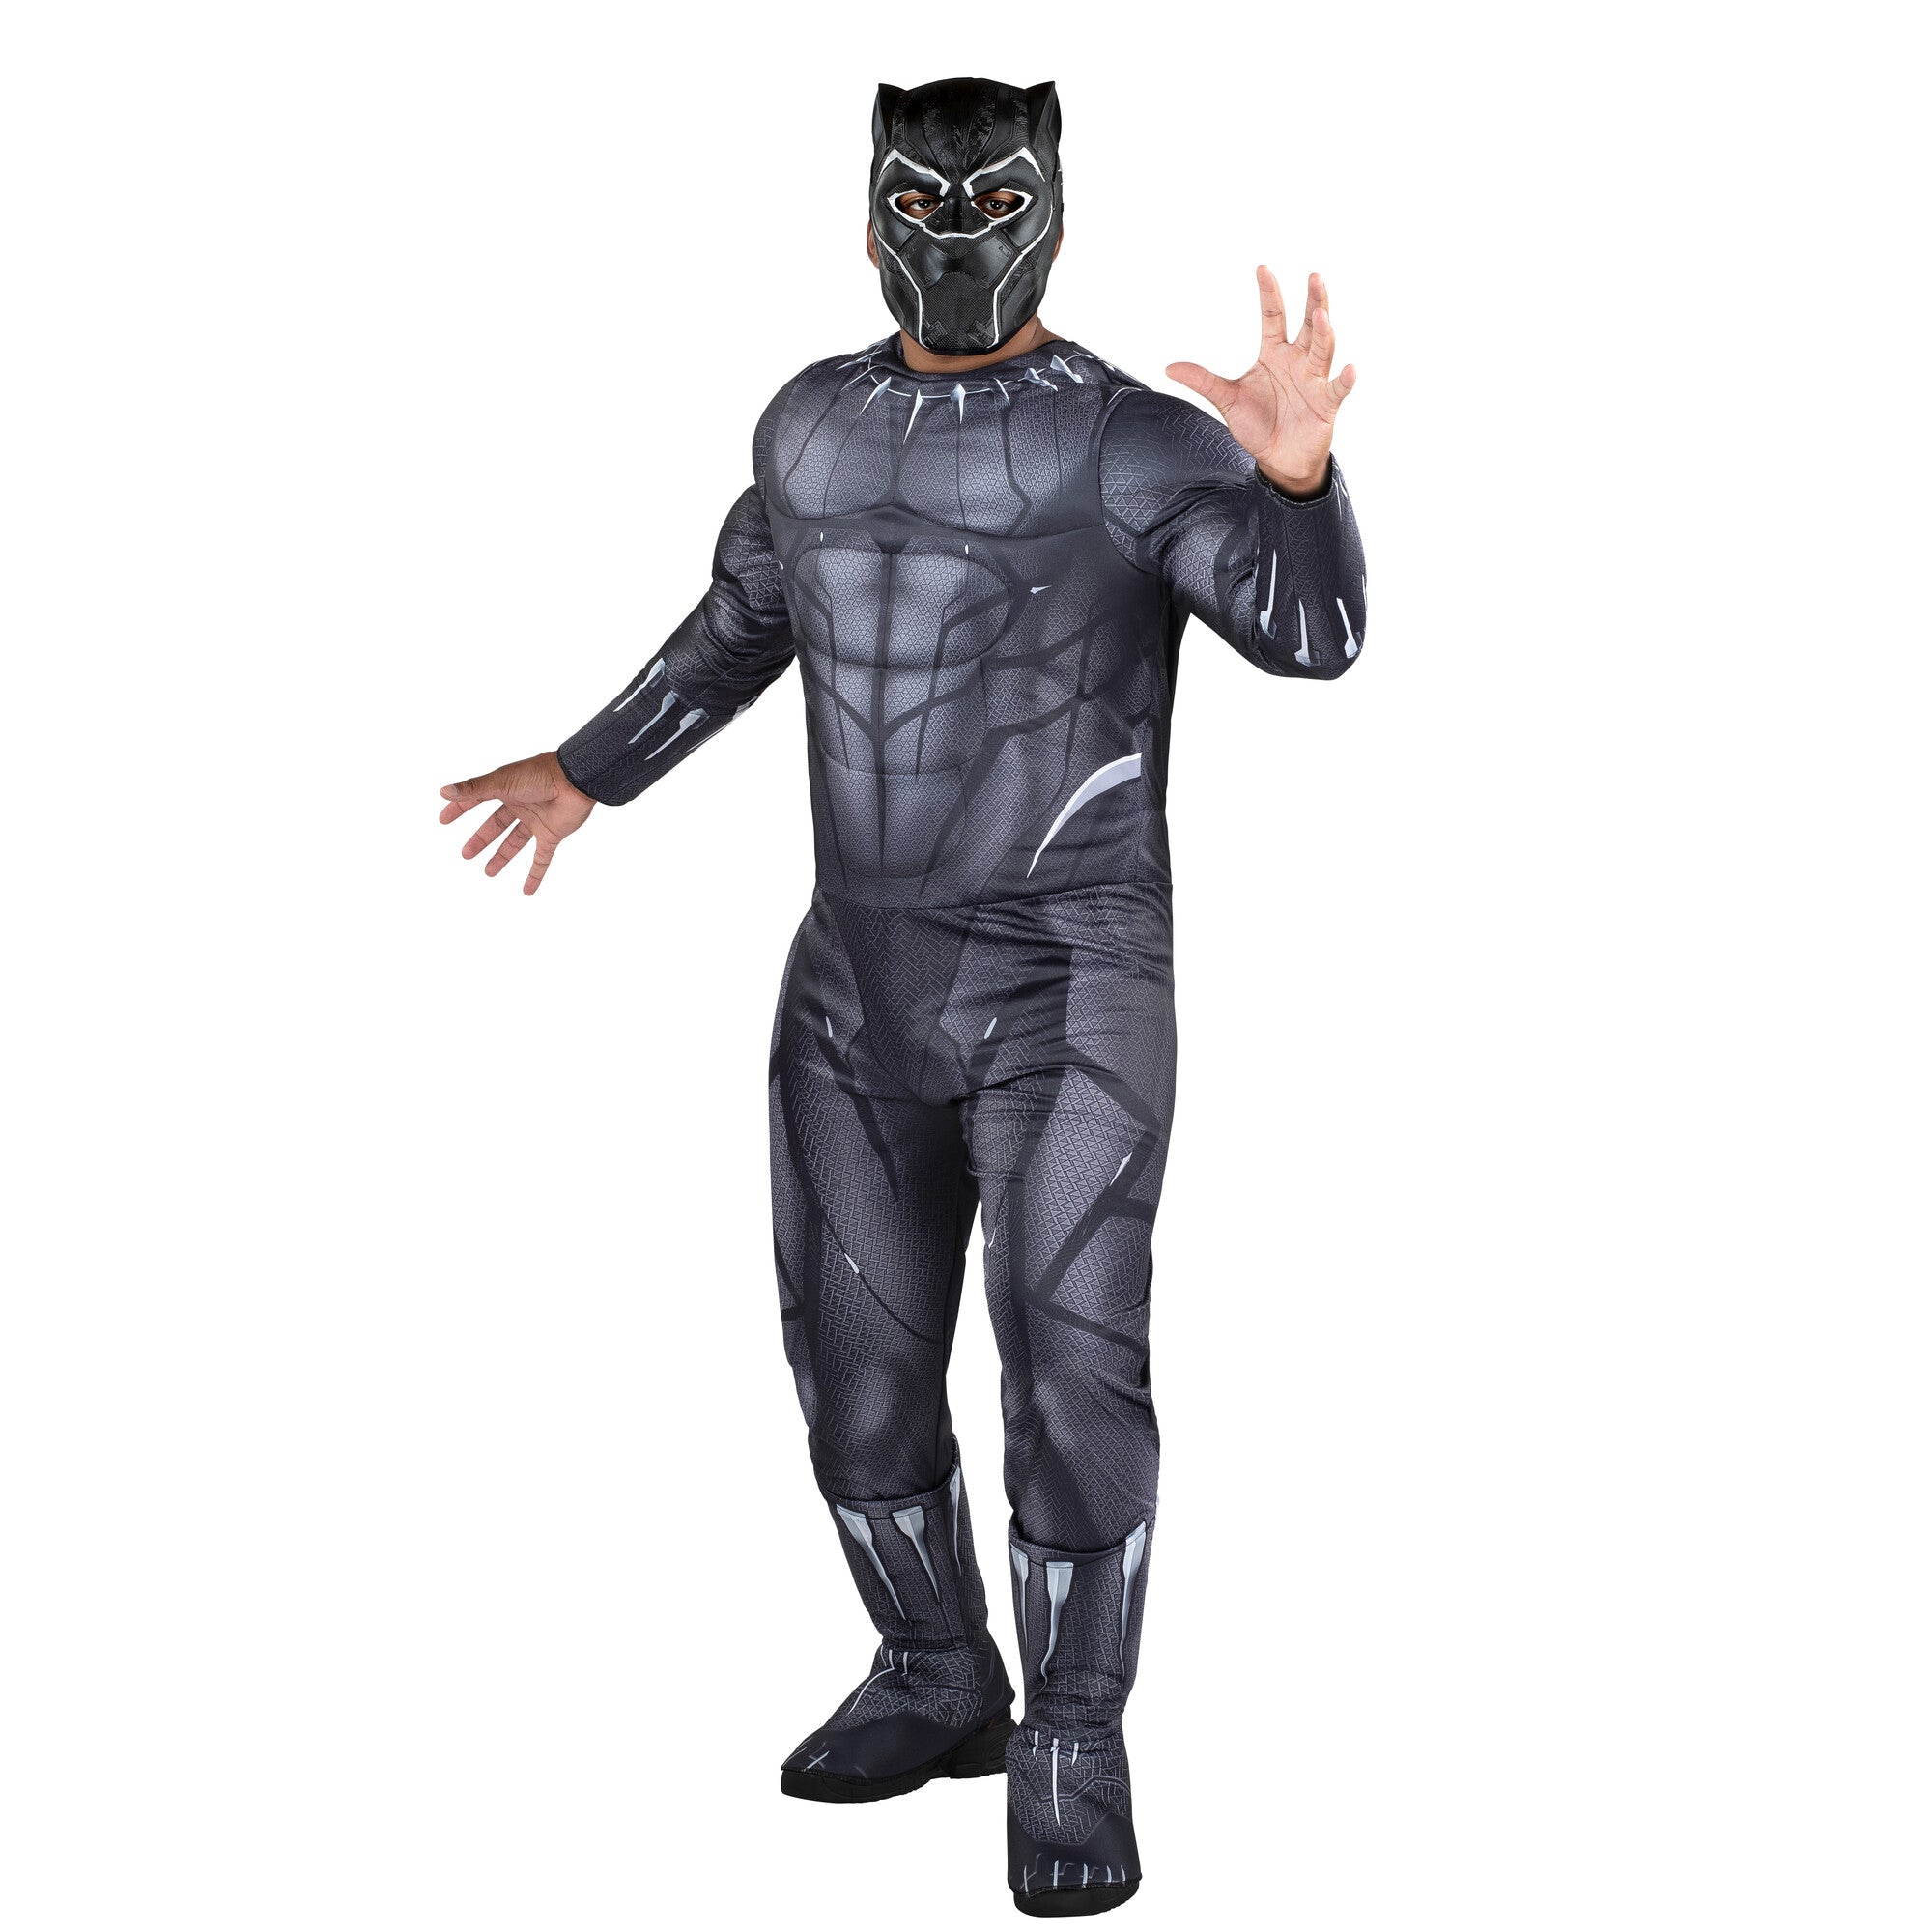 Costume Qualux de Black Panther de Marvel pour adultes